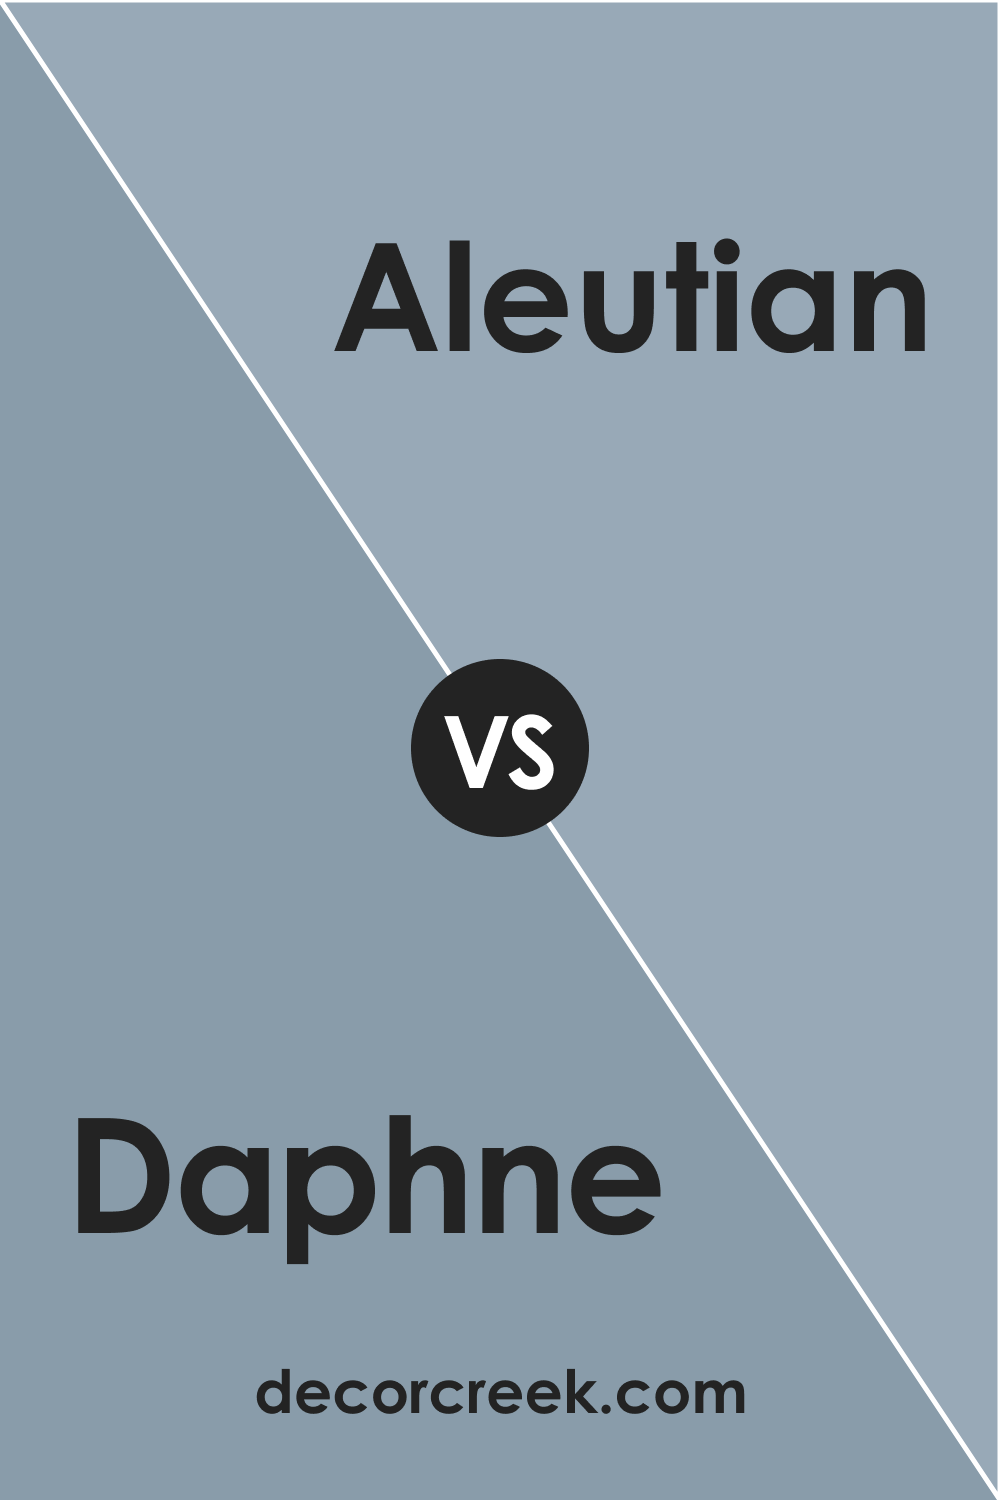 Daphne vs Aleutian